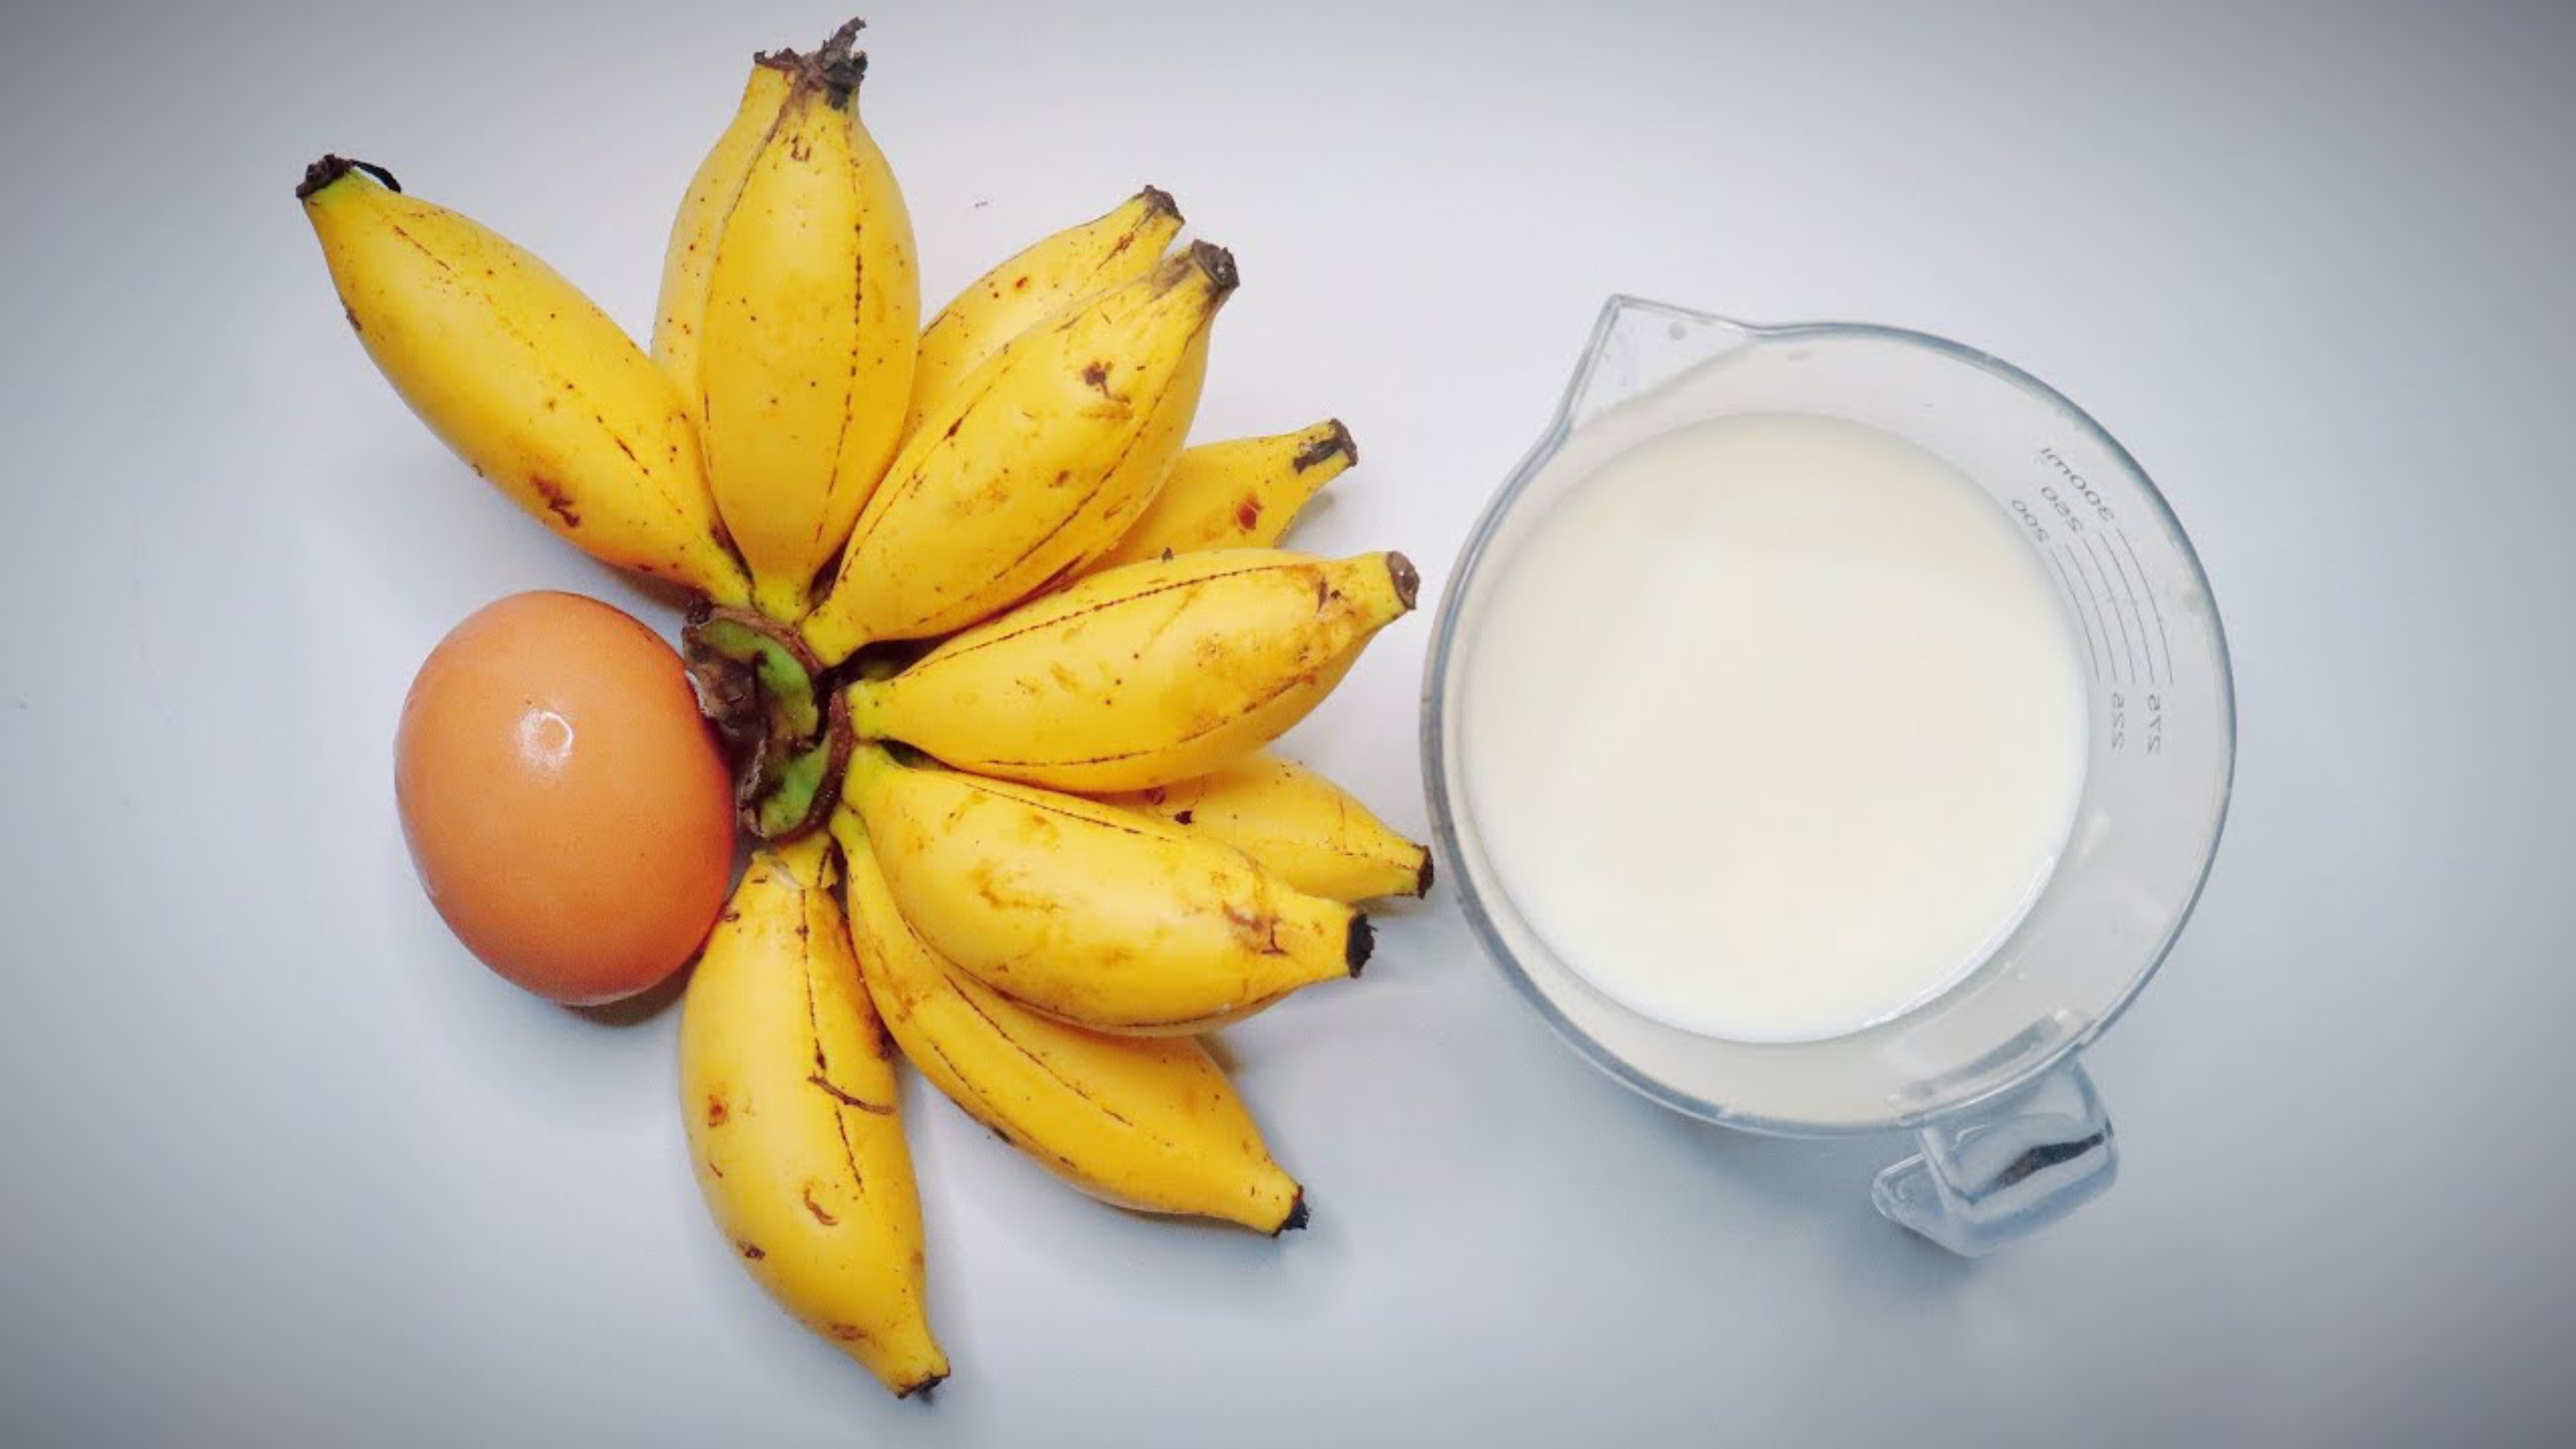 Banánsmoothie nyers tojással és tejjel